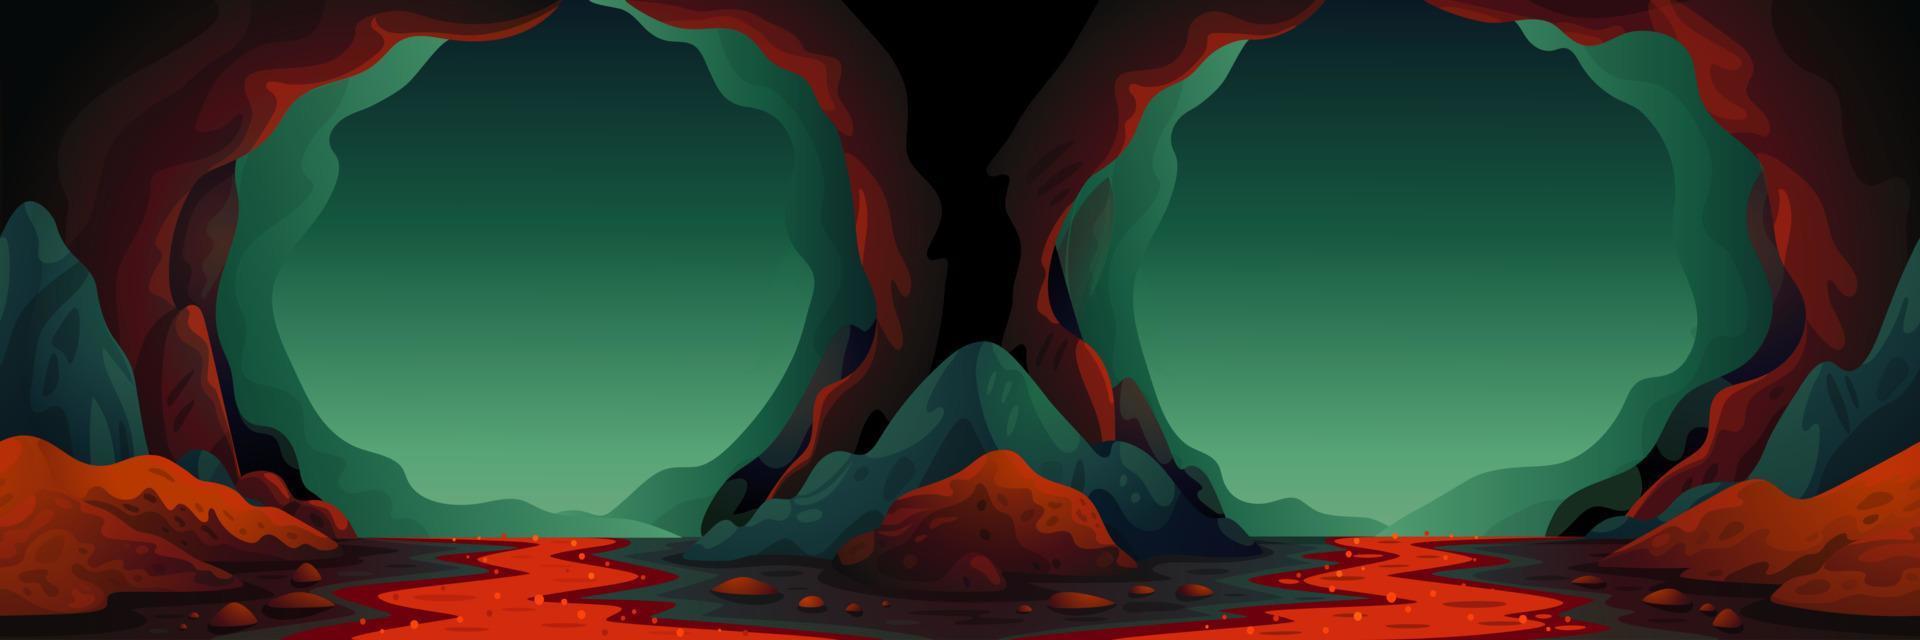 Höhle - Vektor nahtloser Hintergrund. Höhlenlandschaft mit einem unterirdischen Lavafluss in grünlich-blauen Farben. vektorillustration im flachen karikaturstil.